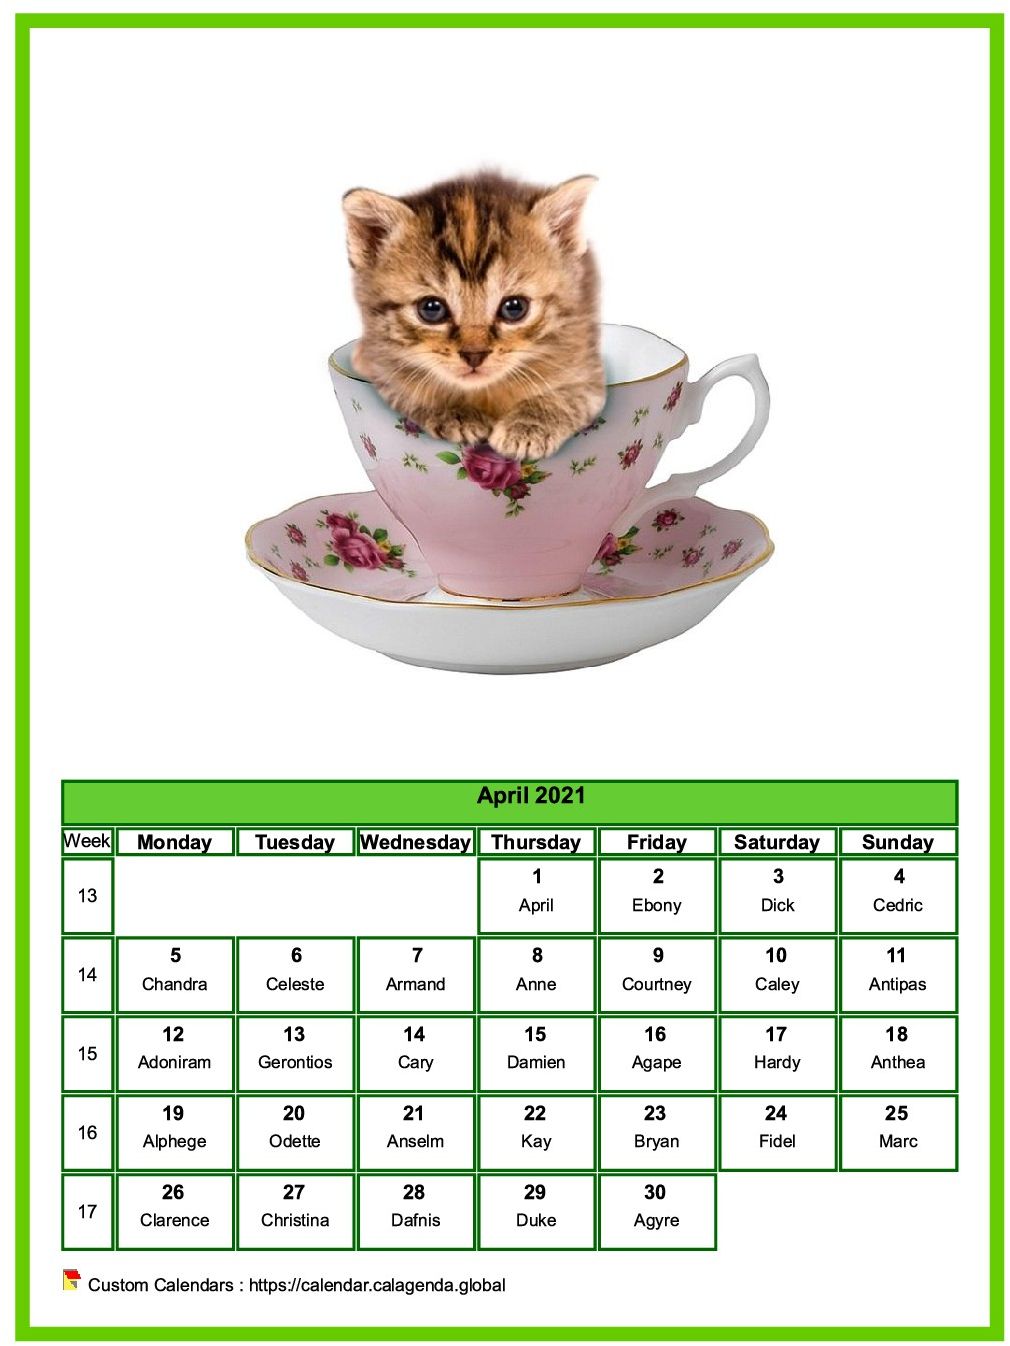 Calendar April 2021 cats